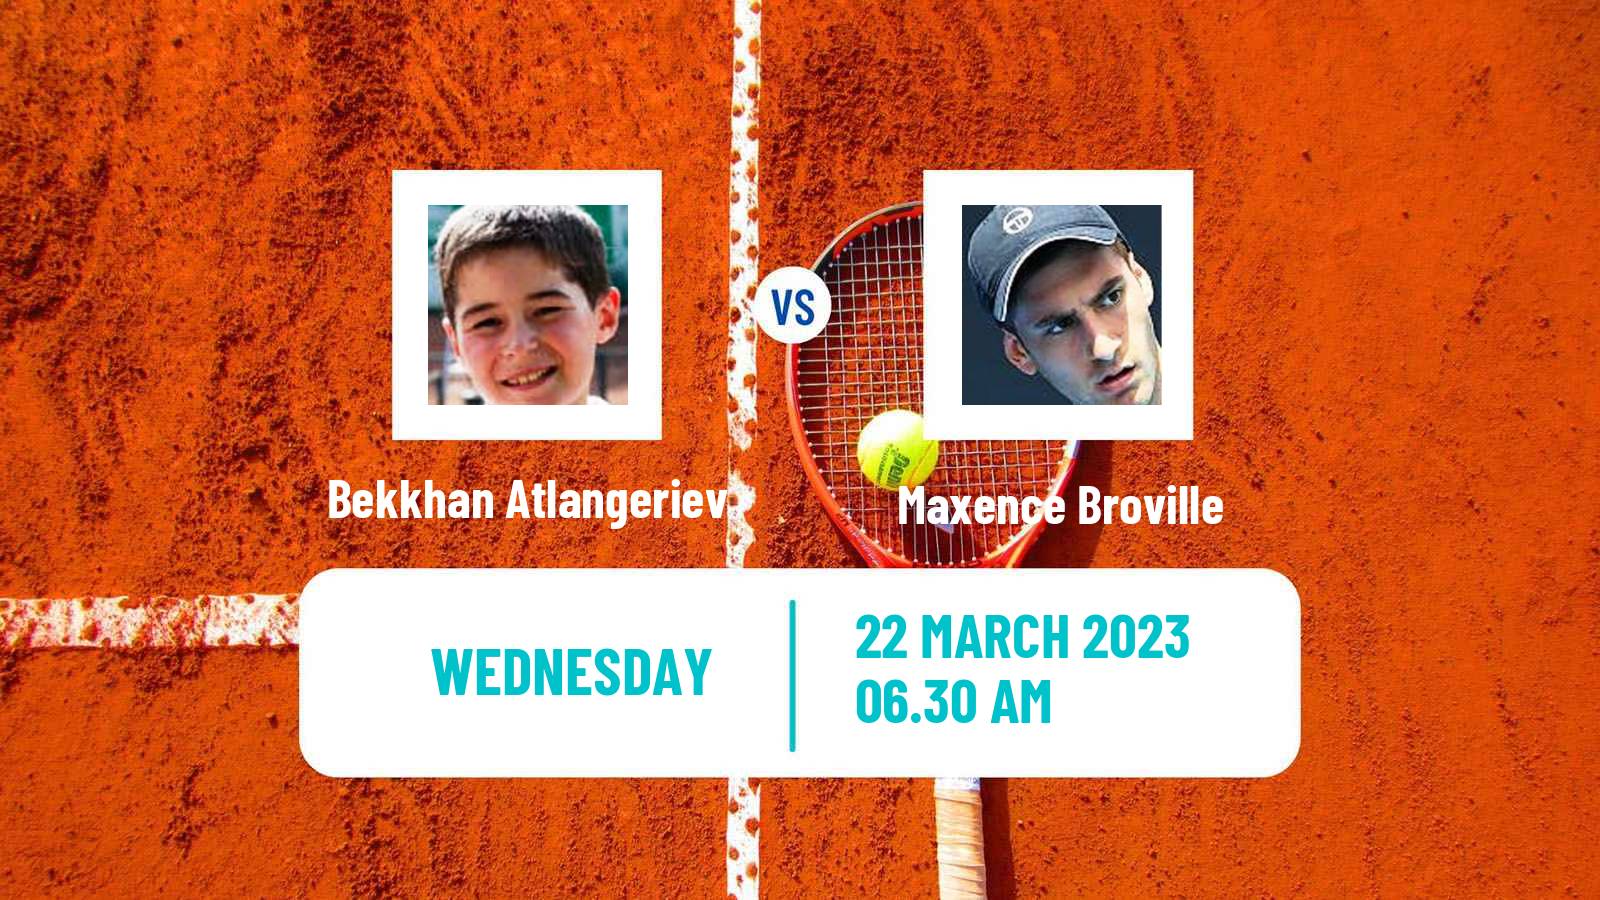 Tennis ITF Tournaments Bekkhan Atlangeriev - Maxence Broville